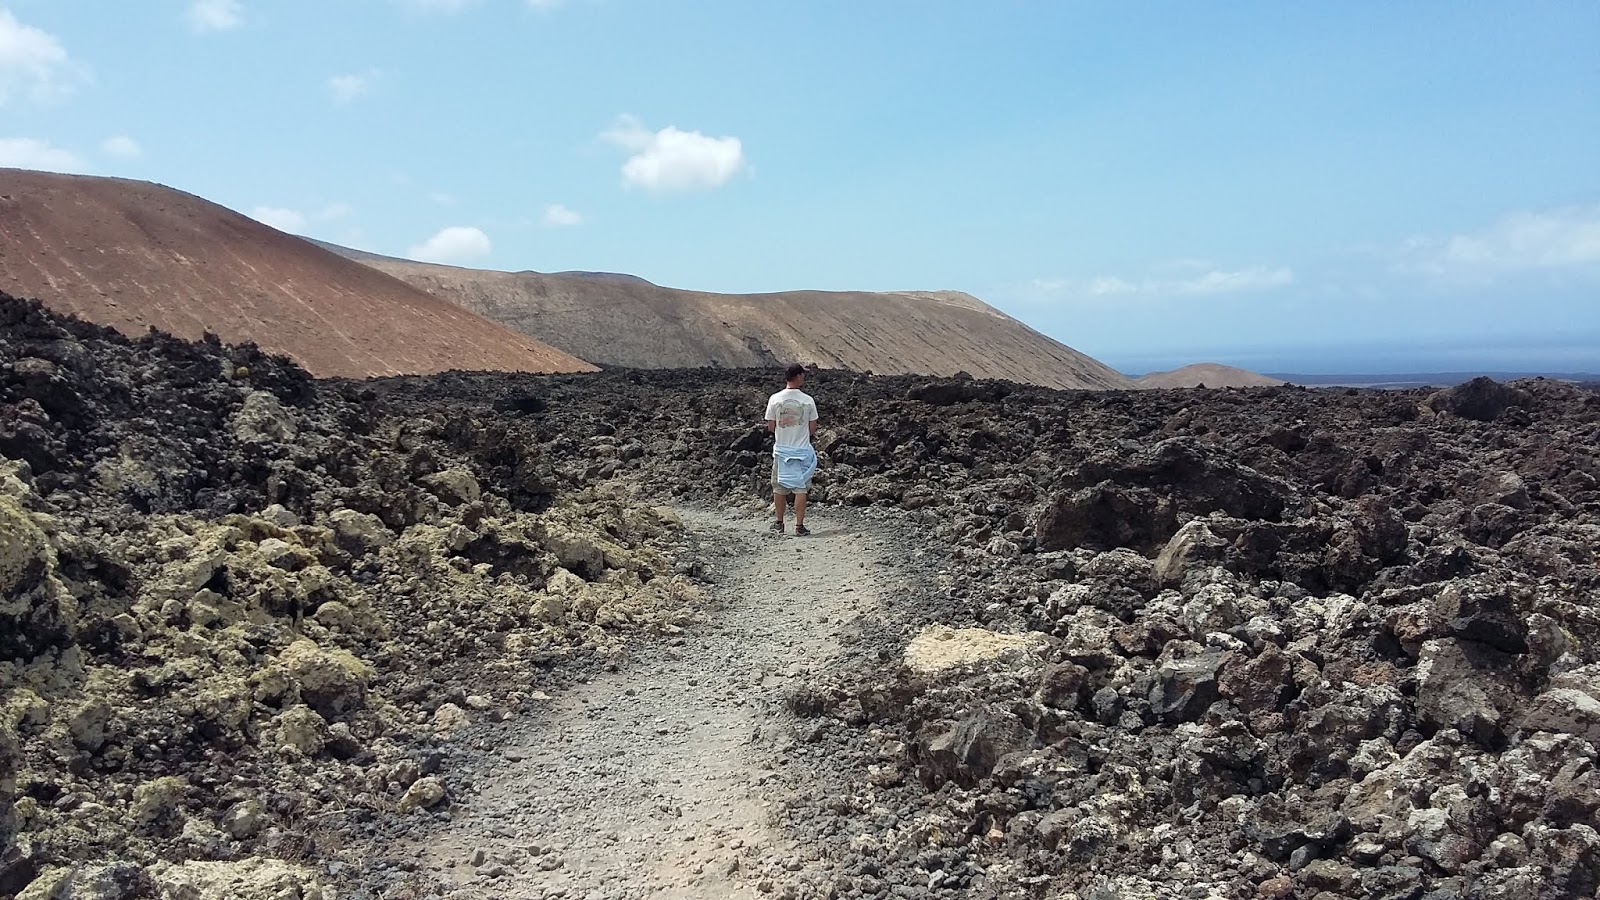 Lanzarote, playas y pateos - Blogs de España - Un día entre volcanes (4)